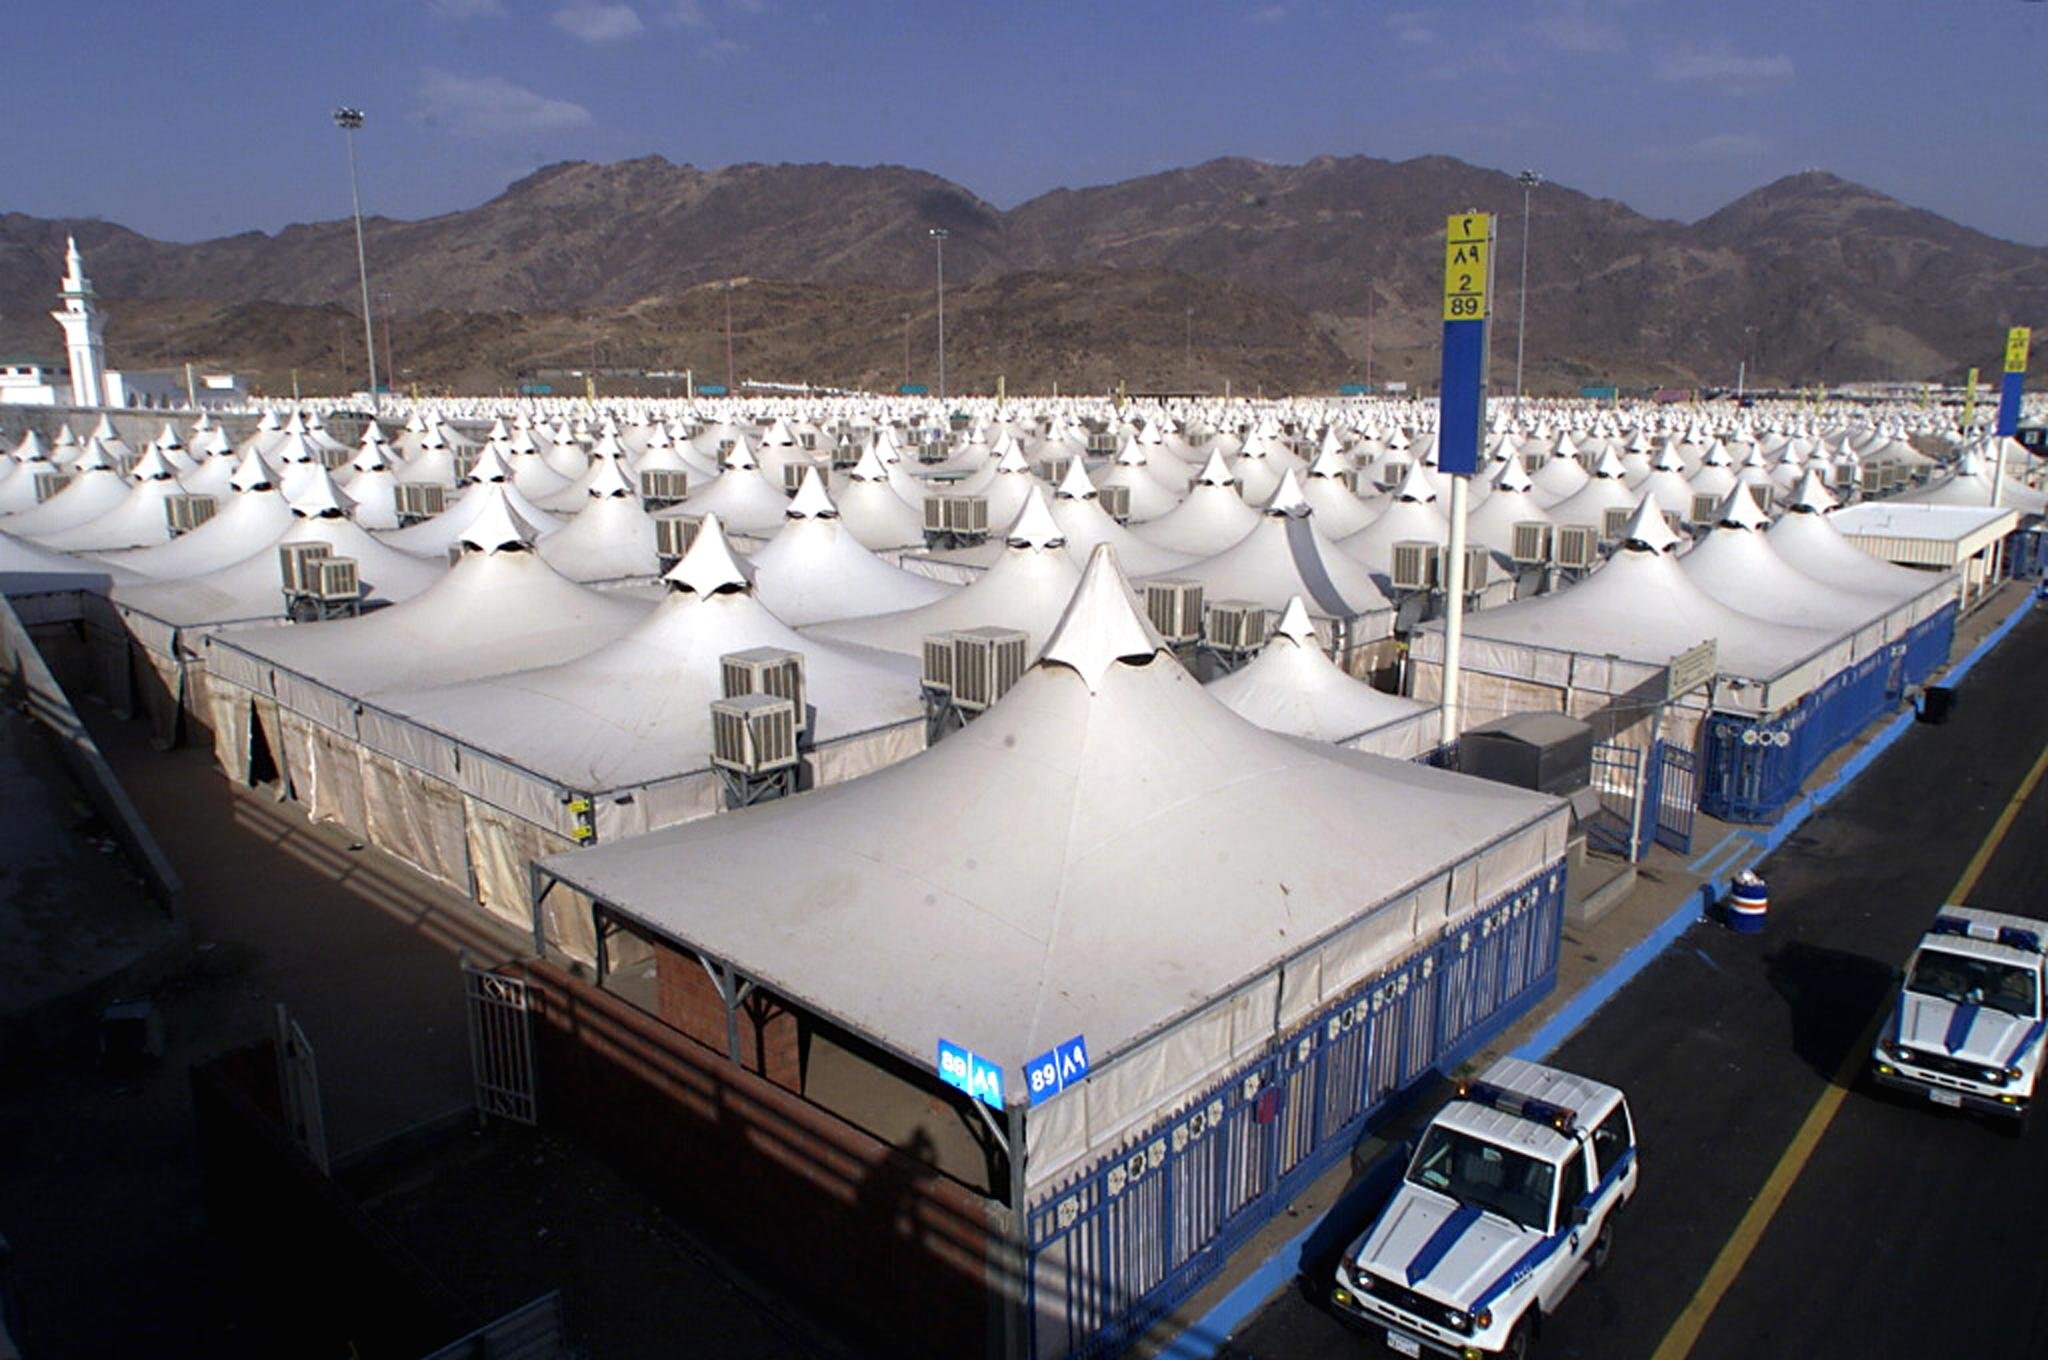 Geen vluchtelingen in luxe tenten Saoedi-Arabië foto